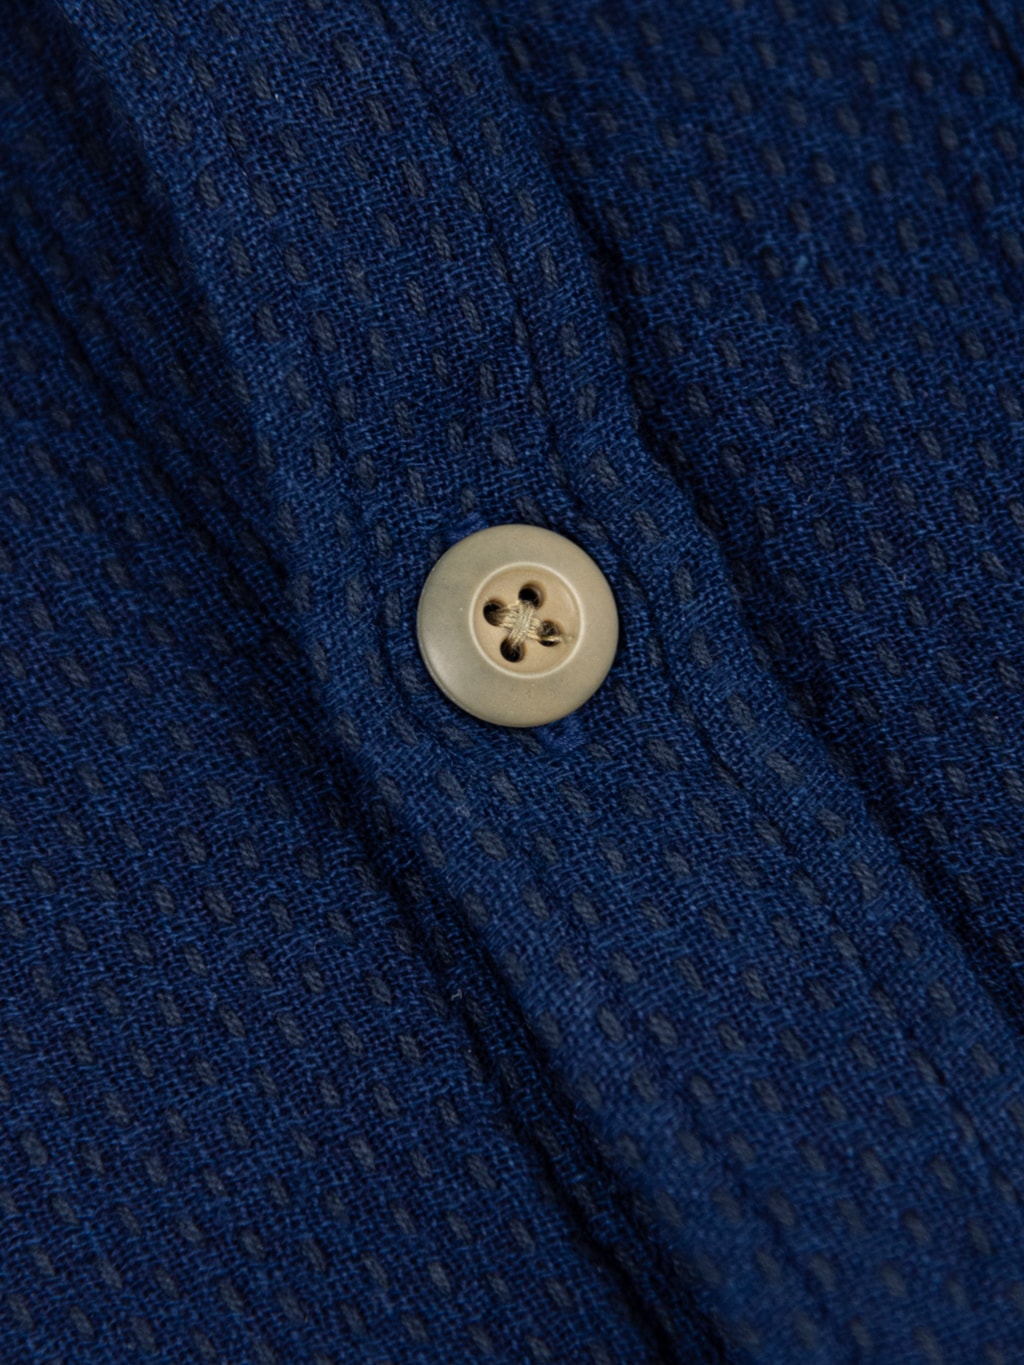 3sixteen CPO Shirt Indigo Sashiko button closeup